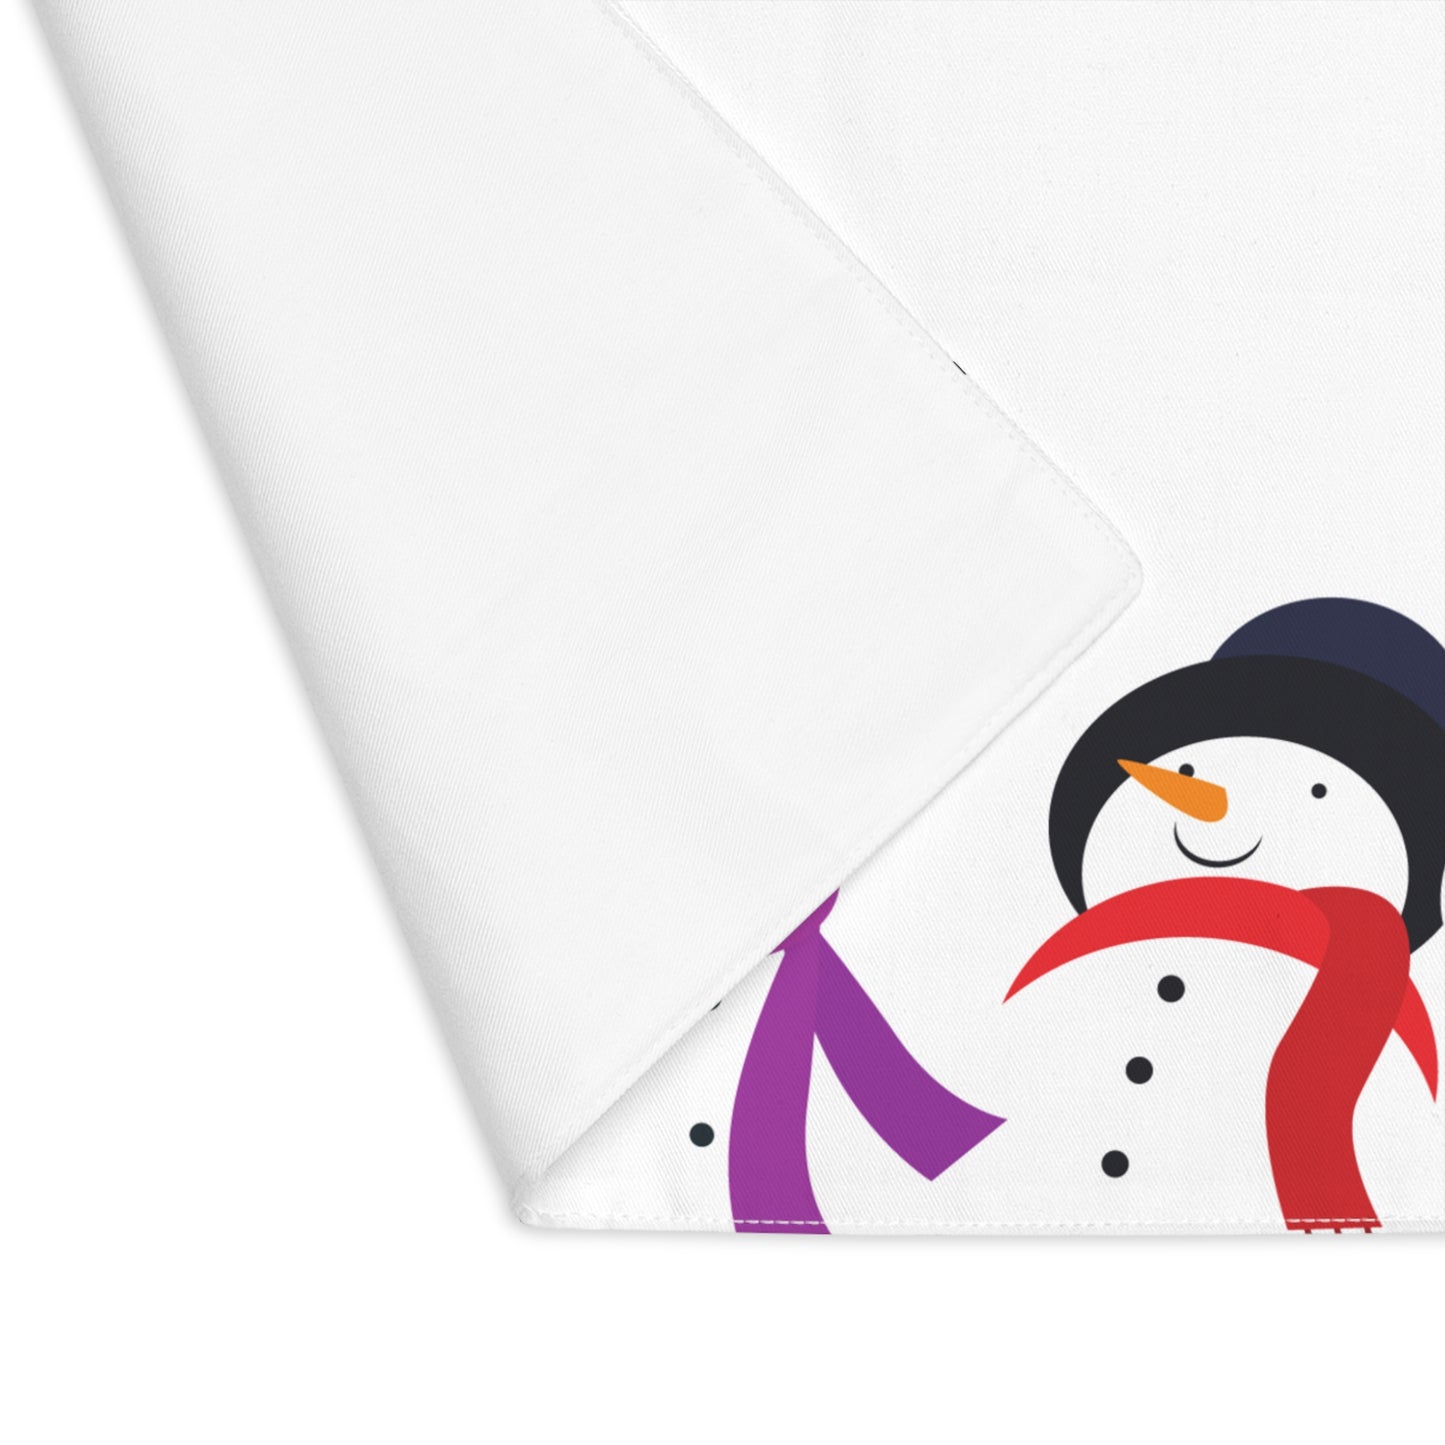 Colorful Snowmen Christmas Placemat, 1pc